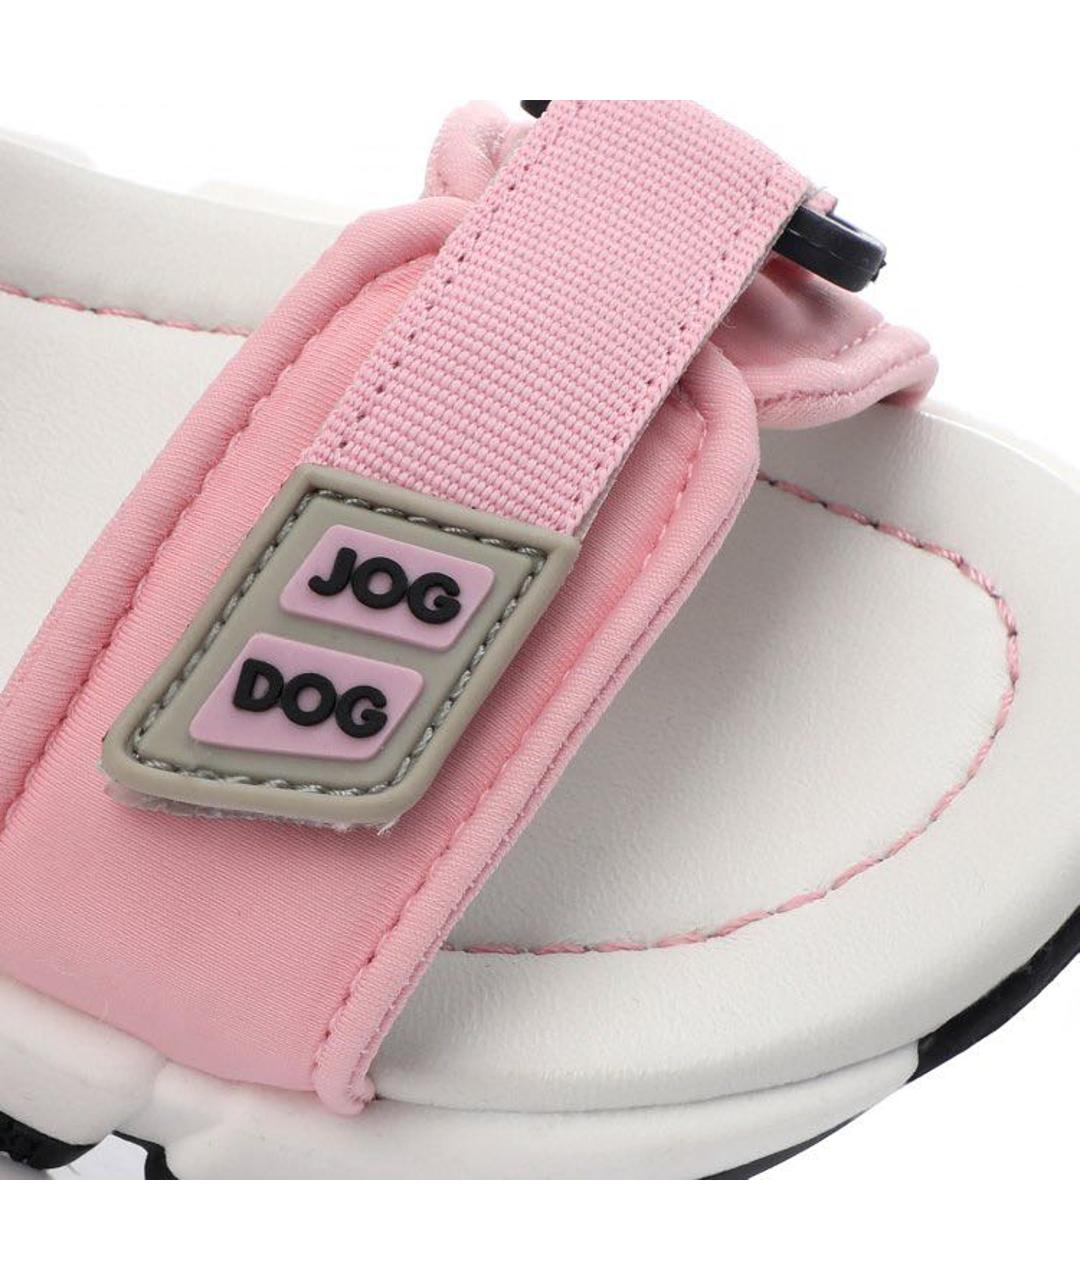 JOG DOG Розовые текстильные сандалии и шлепанцы, фото 3